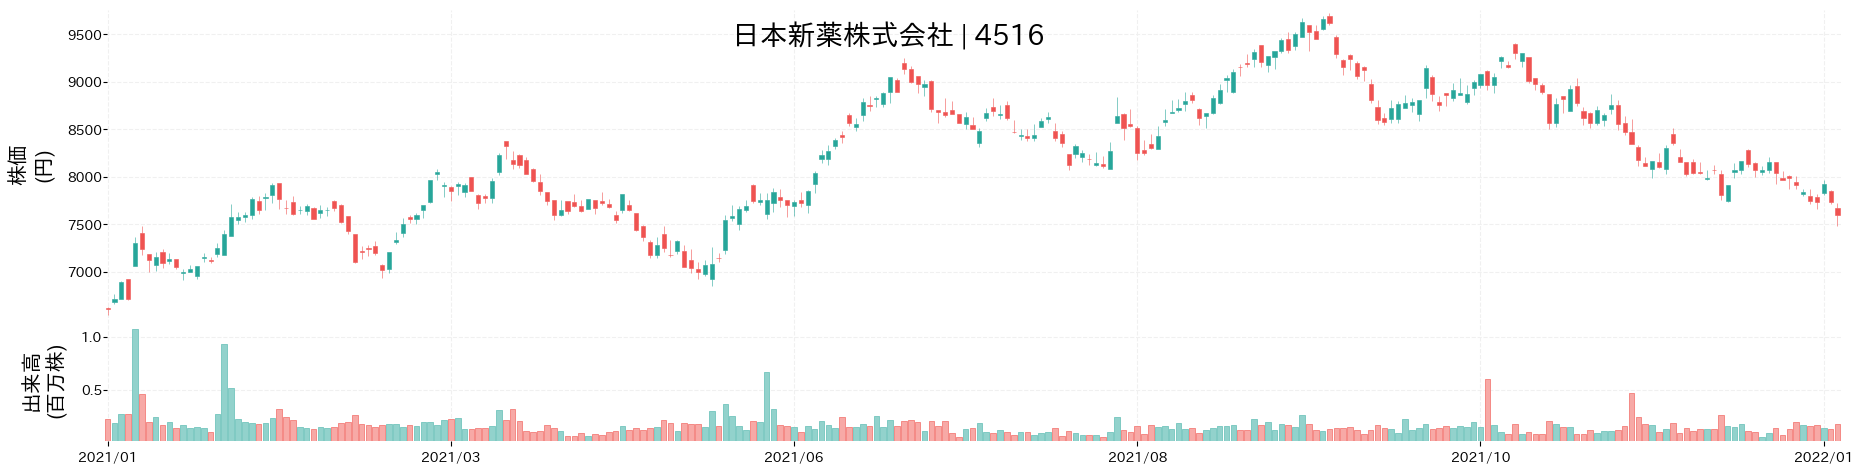 日本新薬の株価推移(2021)